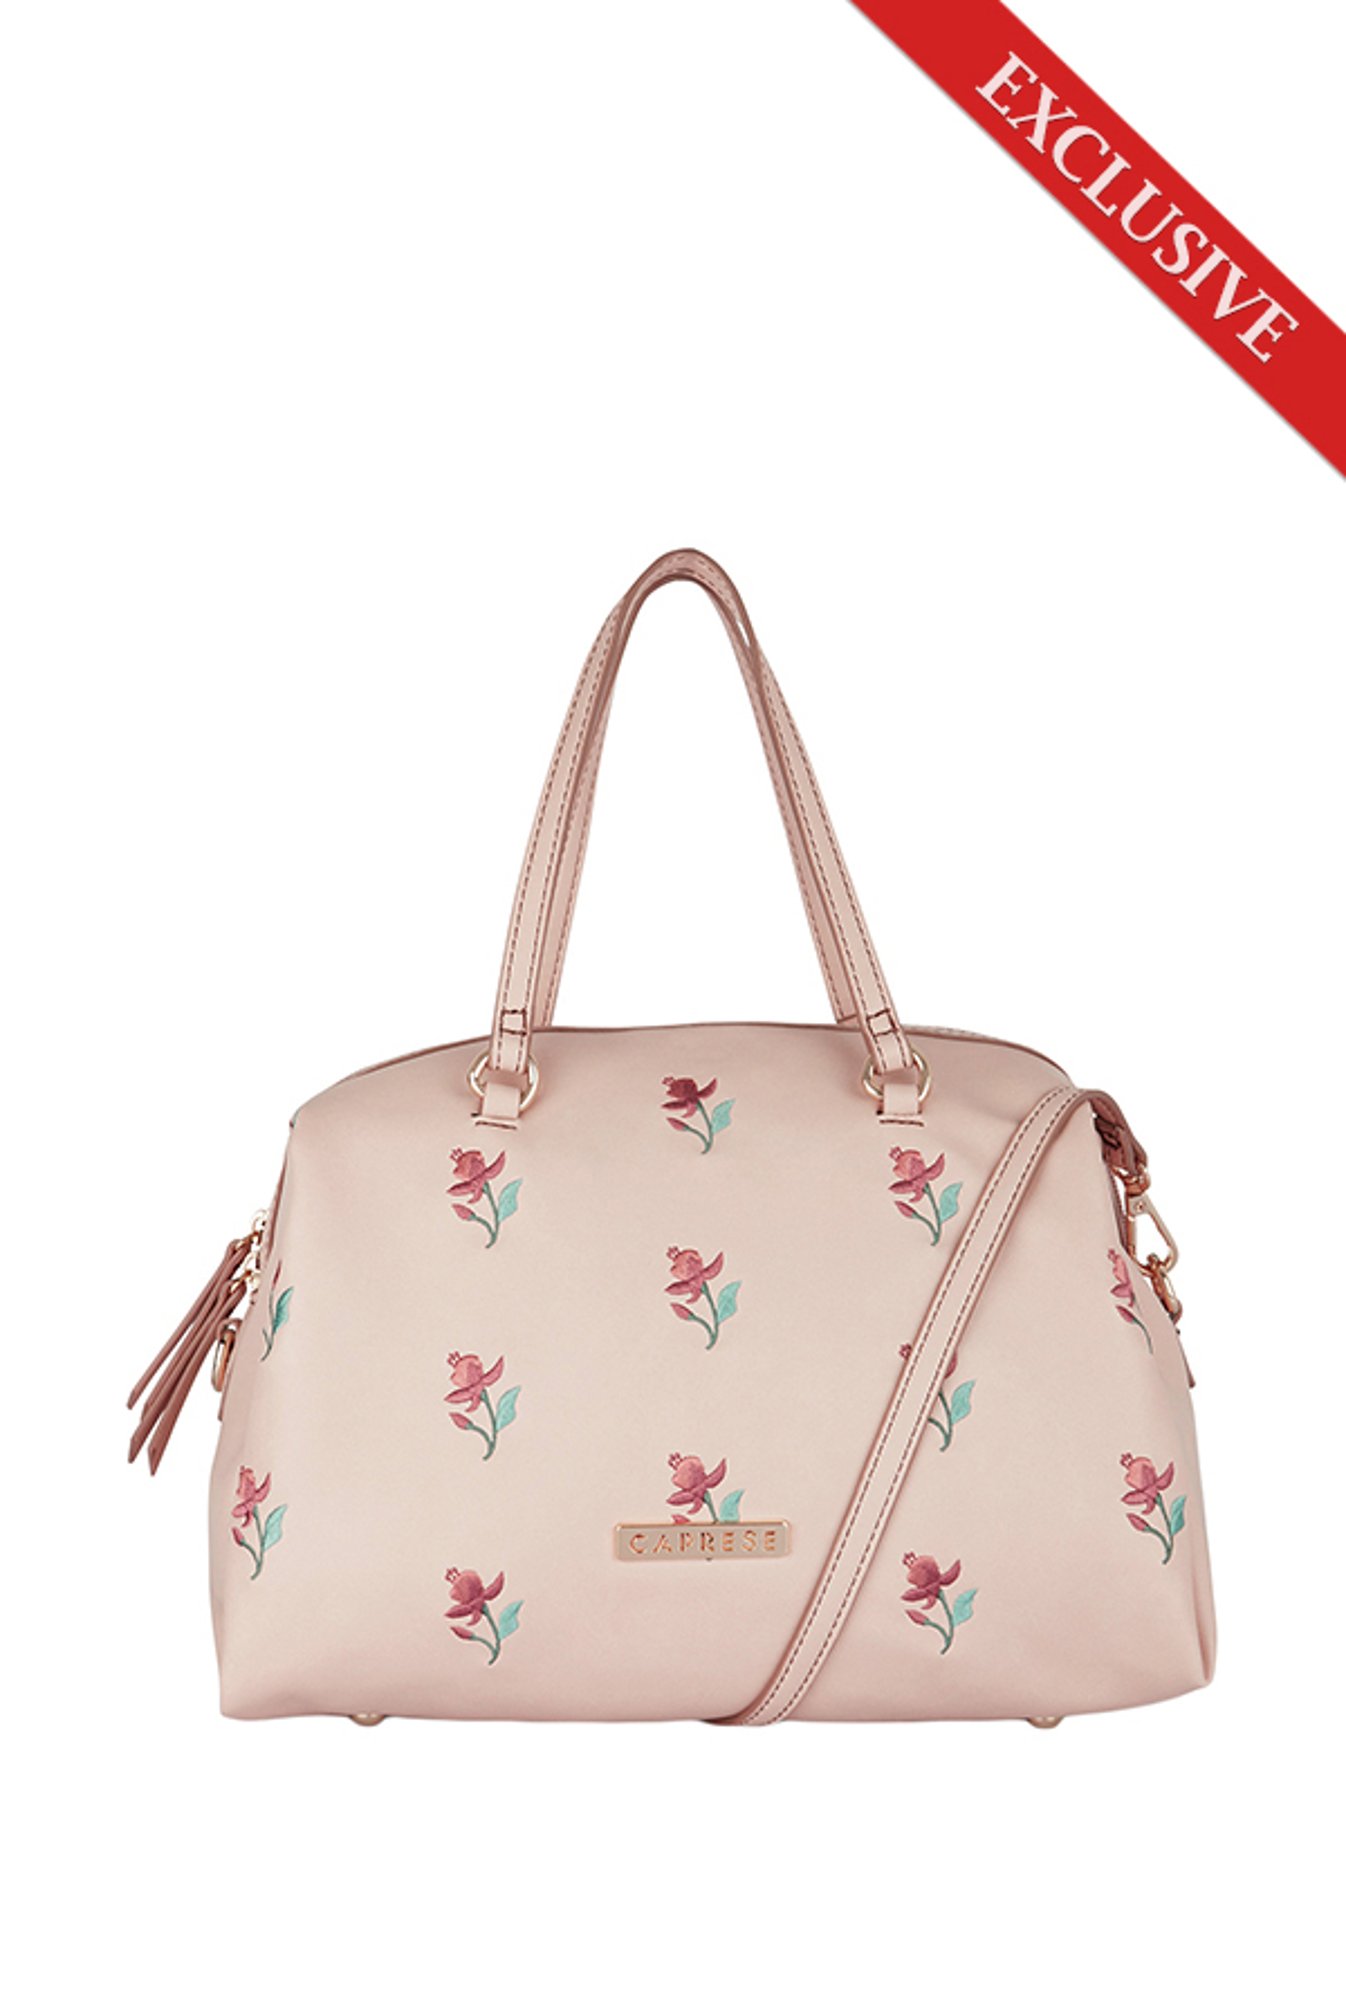 Louis Vuitton Shoulder Bag Floral Bags & Handbags for Women